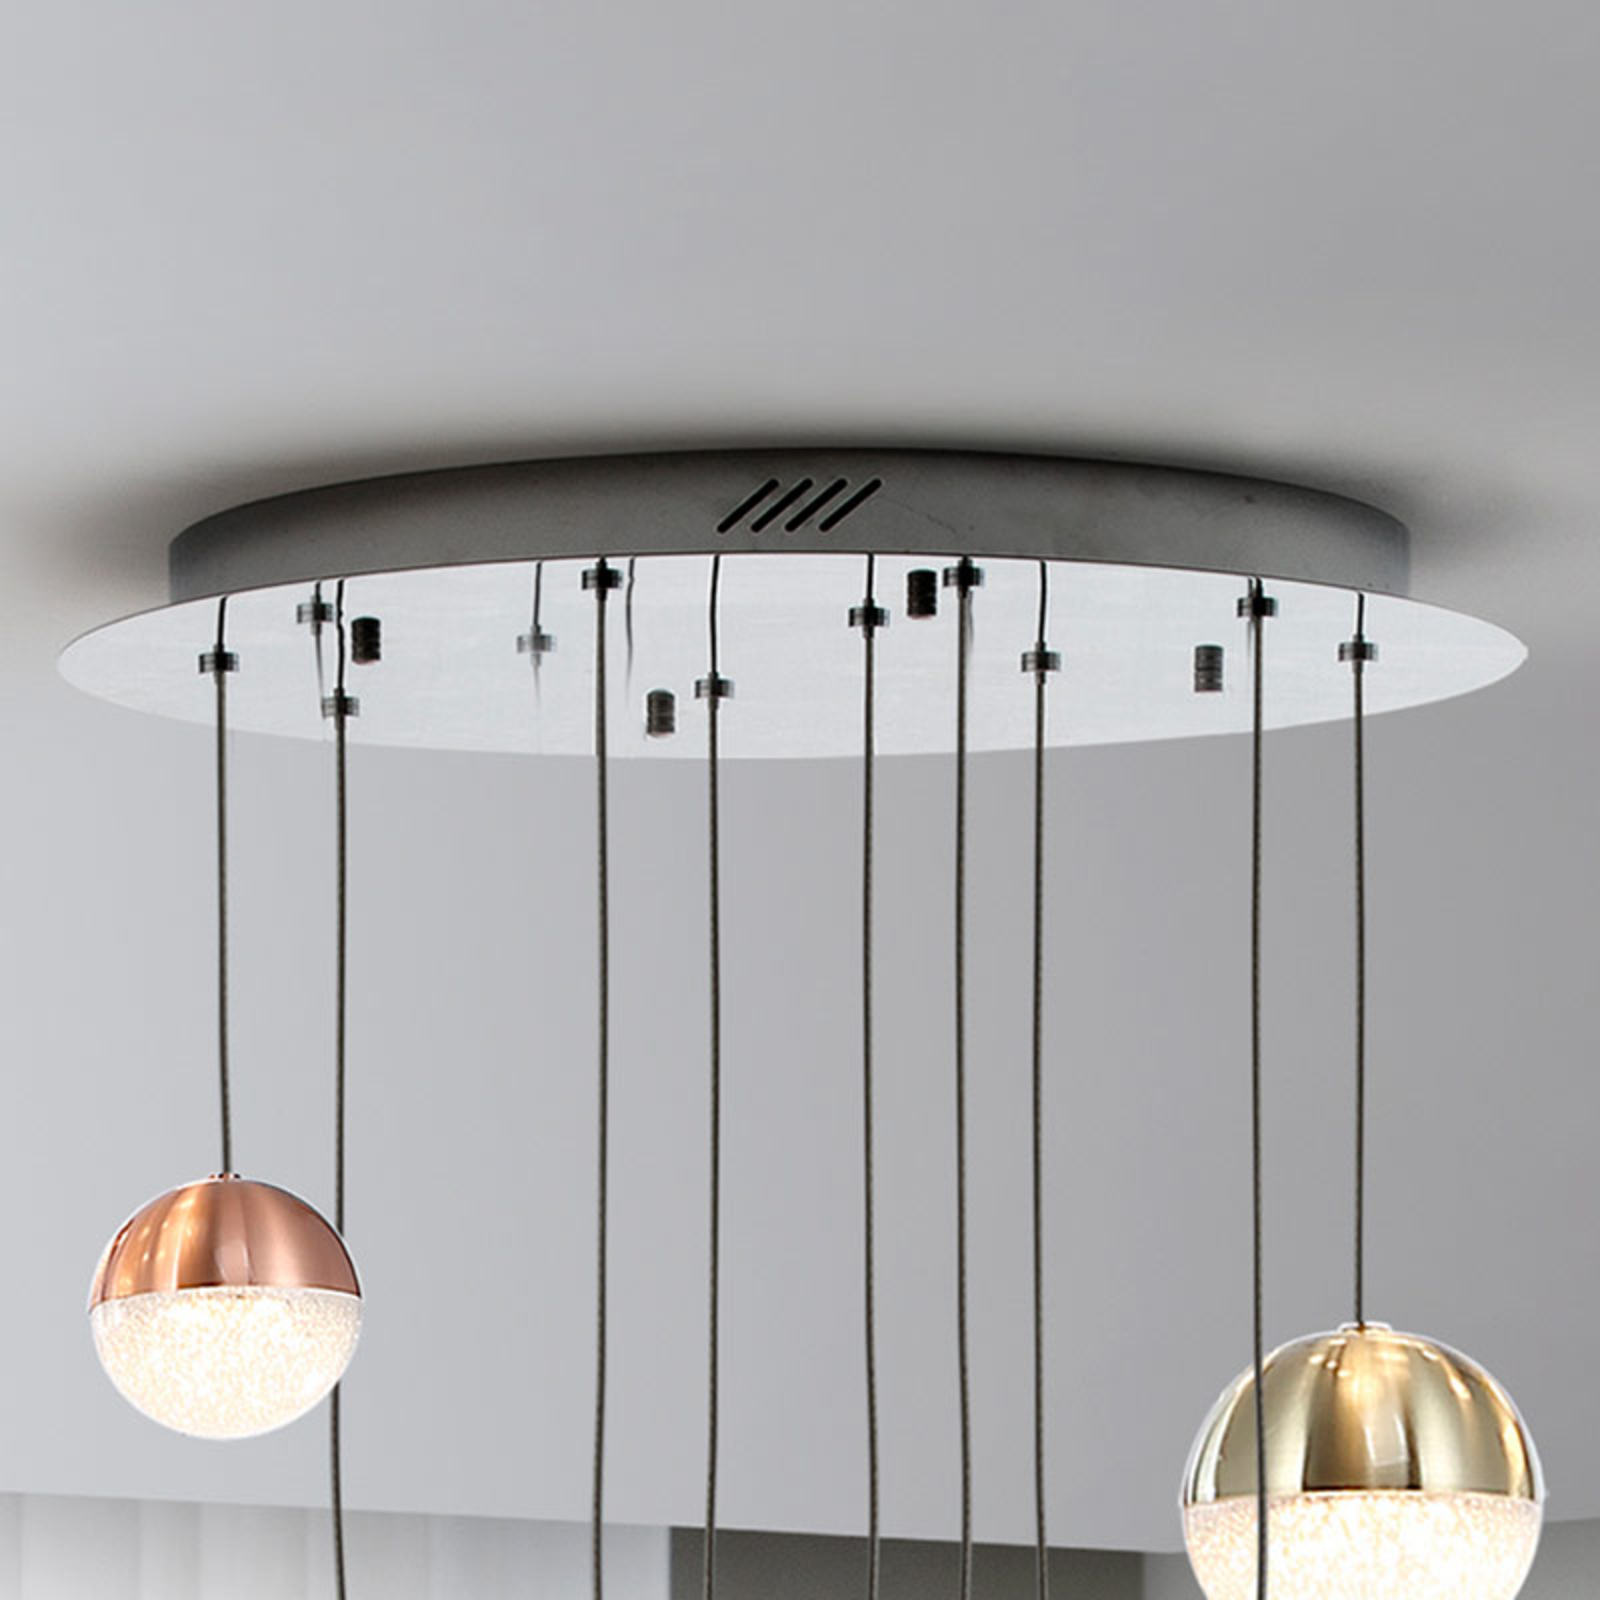 Sphere LED hanging light, multicoloured 9-bulb app